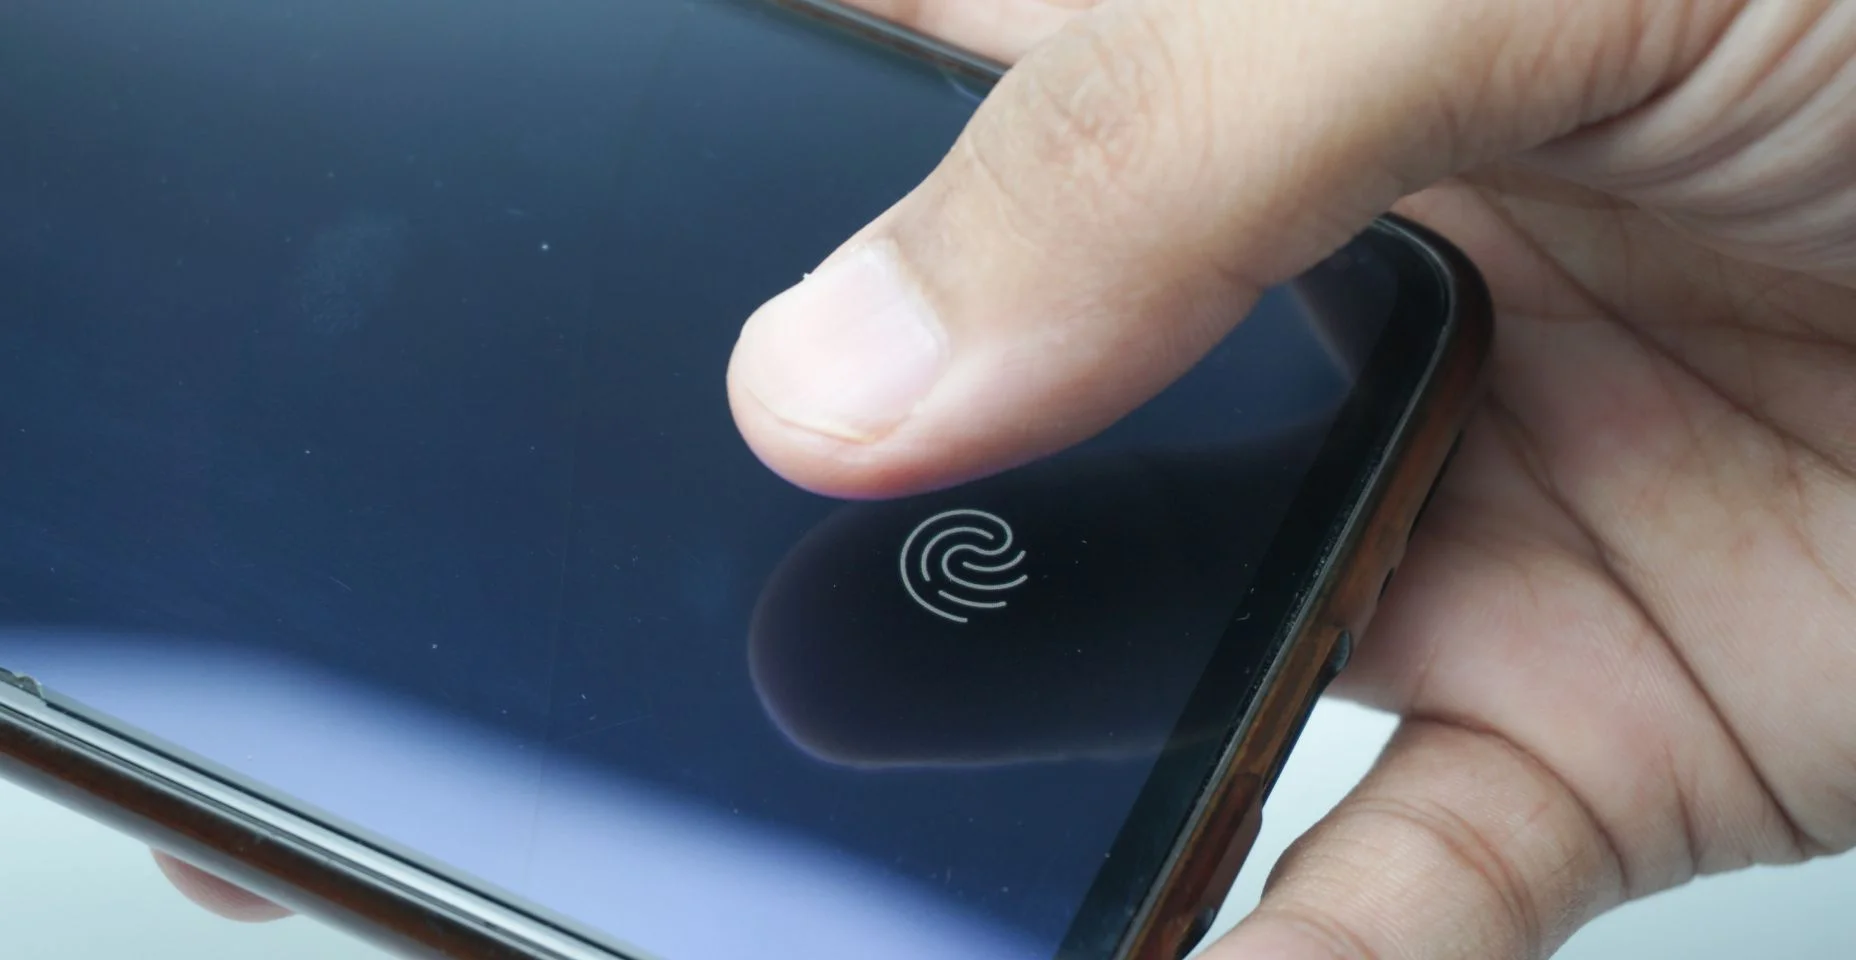 Scanner de impressão digital na tela do telefone. Smartphone com tela sensível ao toque com zona para tocar o dedo humano, para desbloquear o dispositivo.